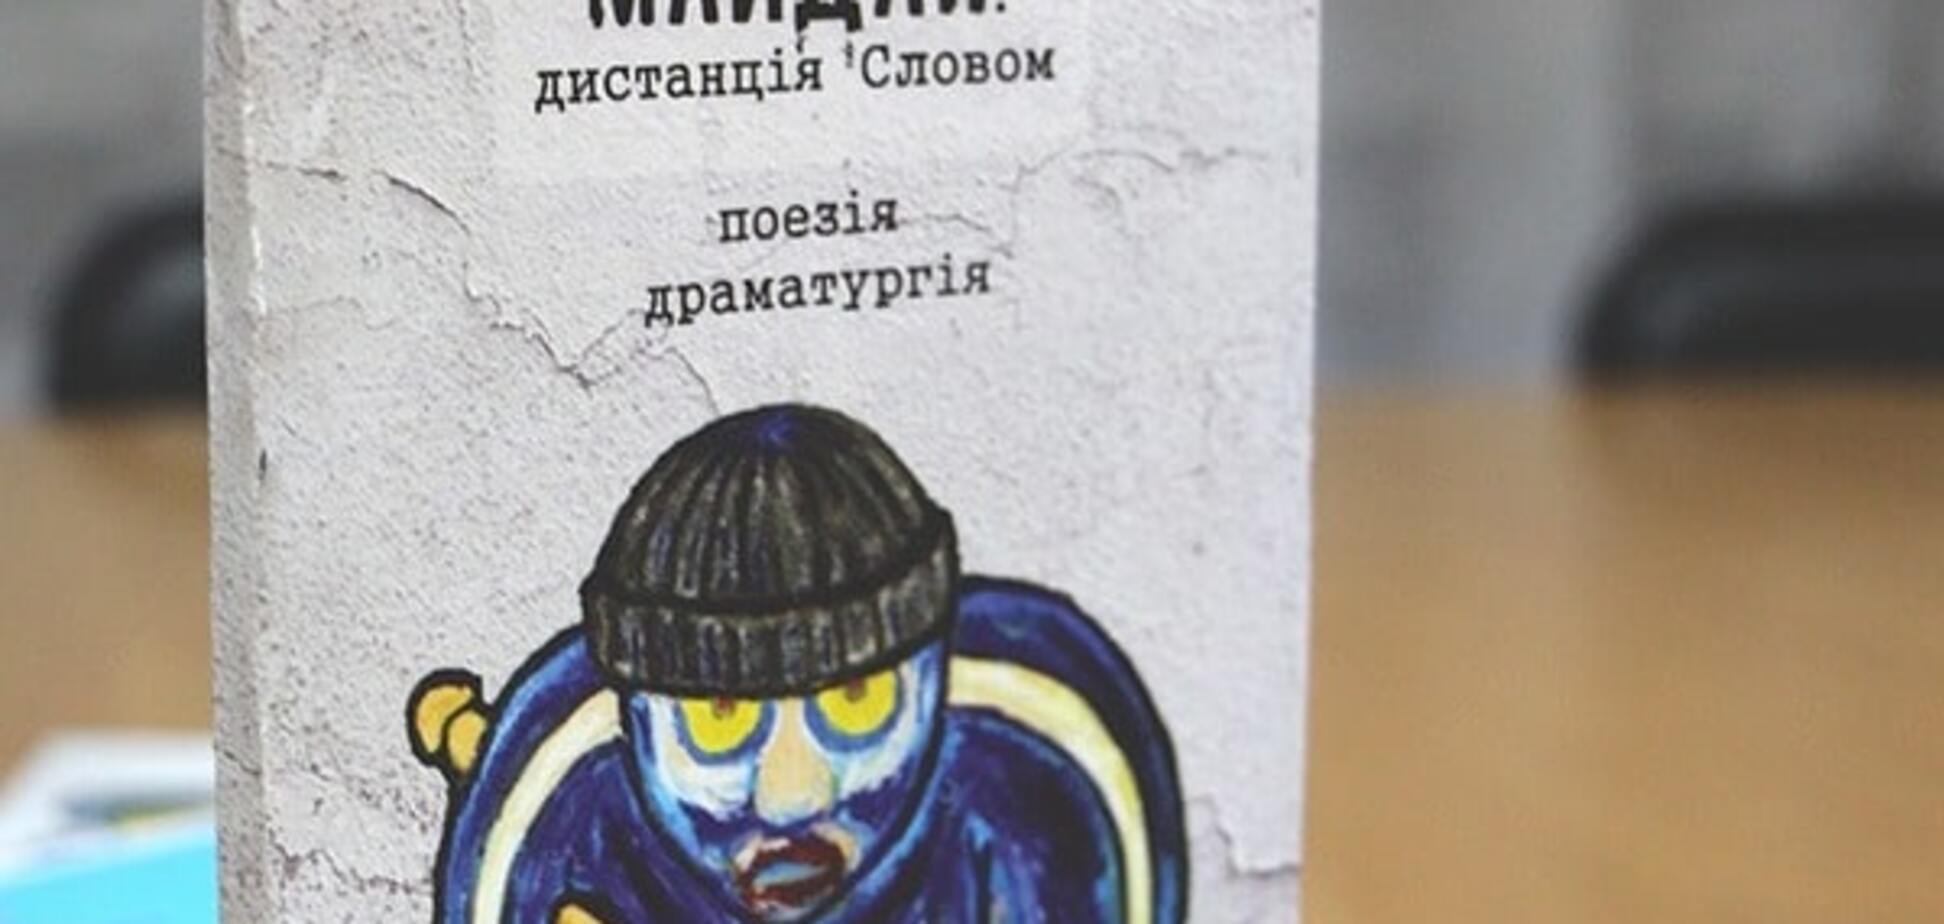 'Тітушка' став героєм збірки поезії про Майдан